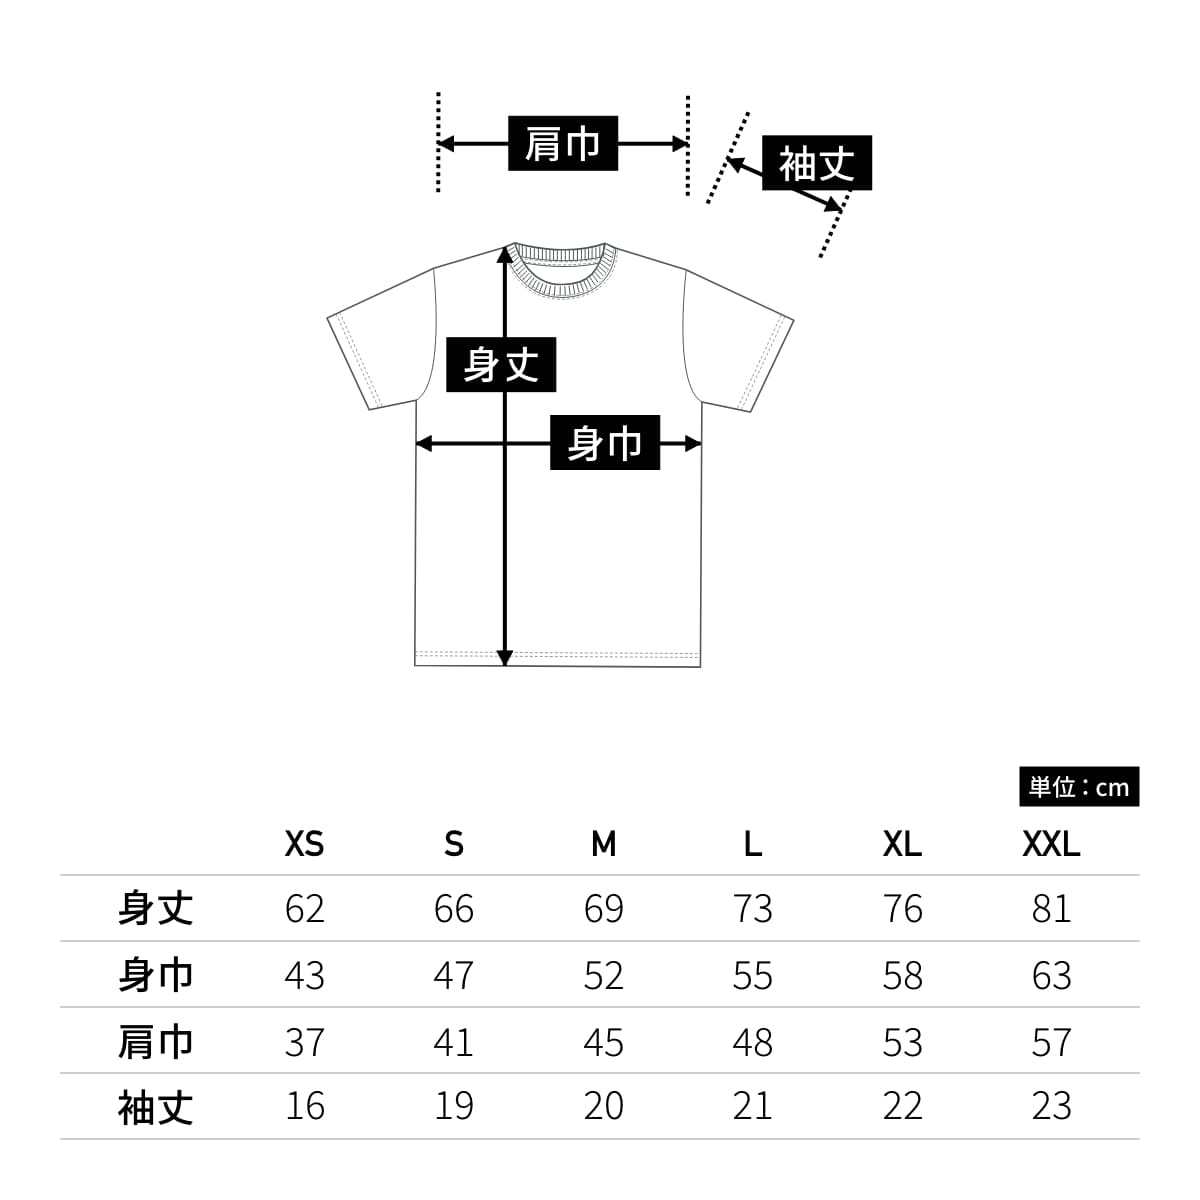 オーセンティック スーパーヘヴィーウェイト 7.1オンス Tシャツ | メンズ | 1枚 | 4252-01 | ライトオリーブ